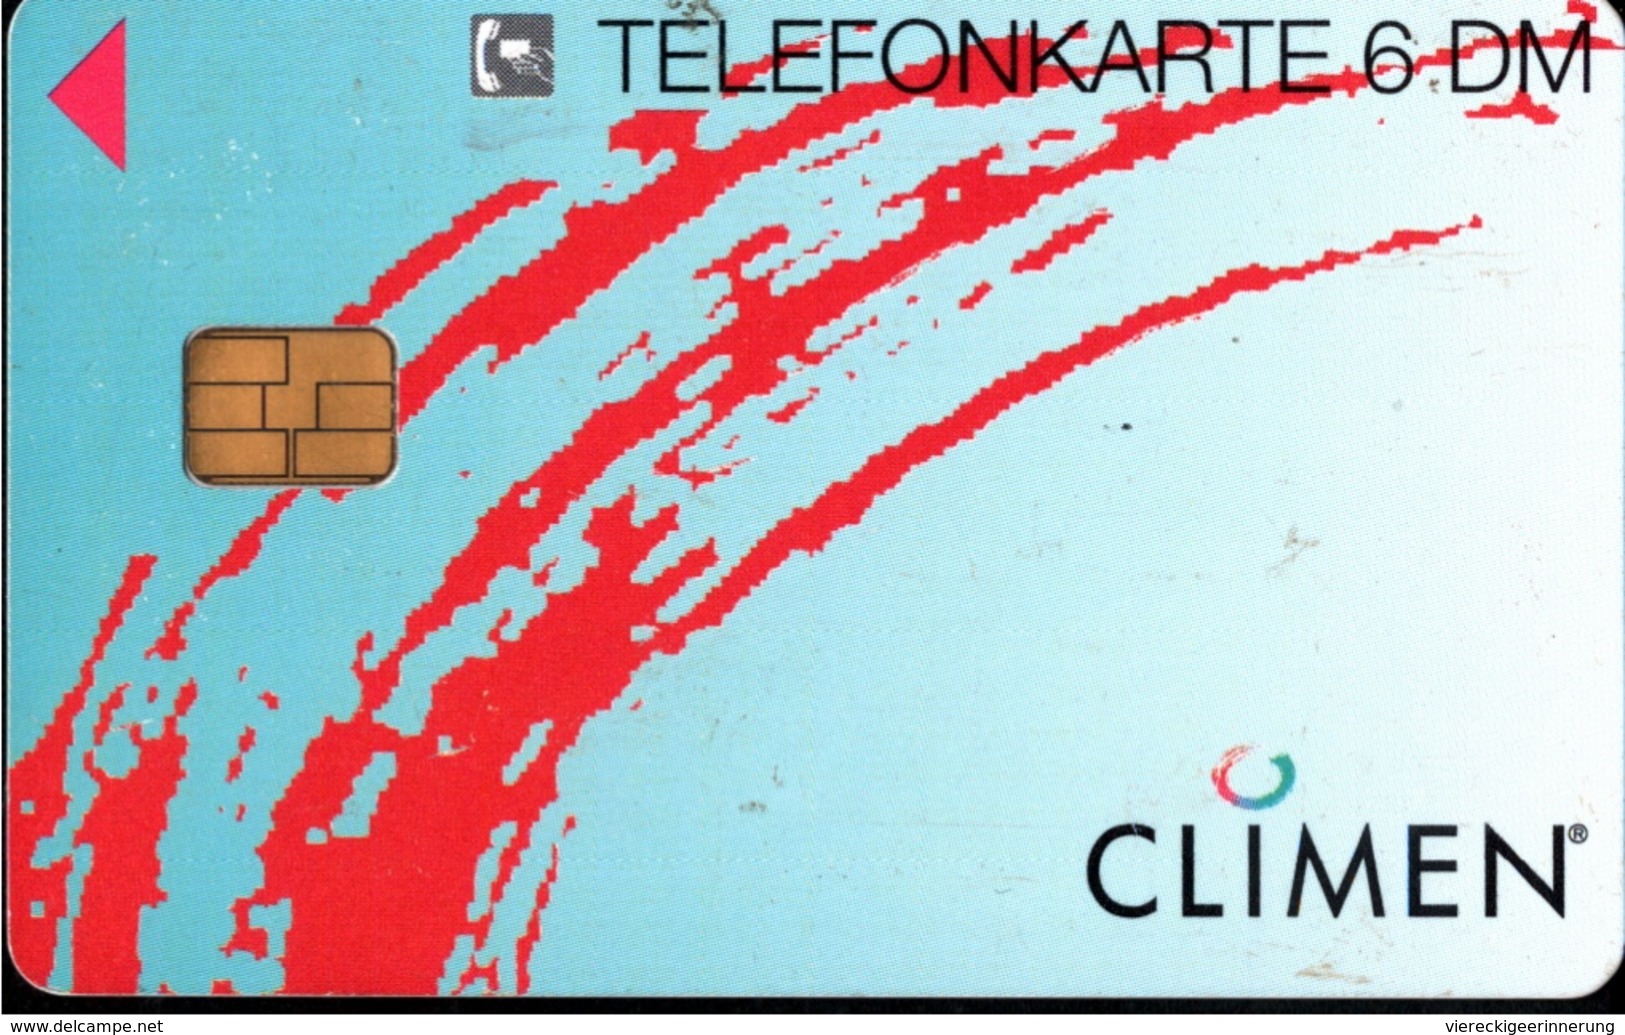 ! Telefonkarte, Telecarte, Phonecard, 1996, O799, Auflage 3000, Schering, Climen, Germany - O-Series: Kundenserie Vom Sammlerservice Ausgeschlossen